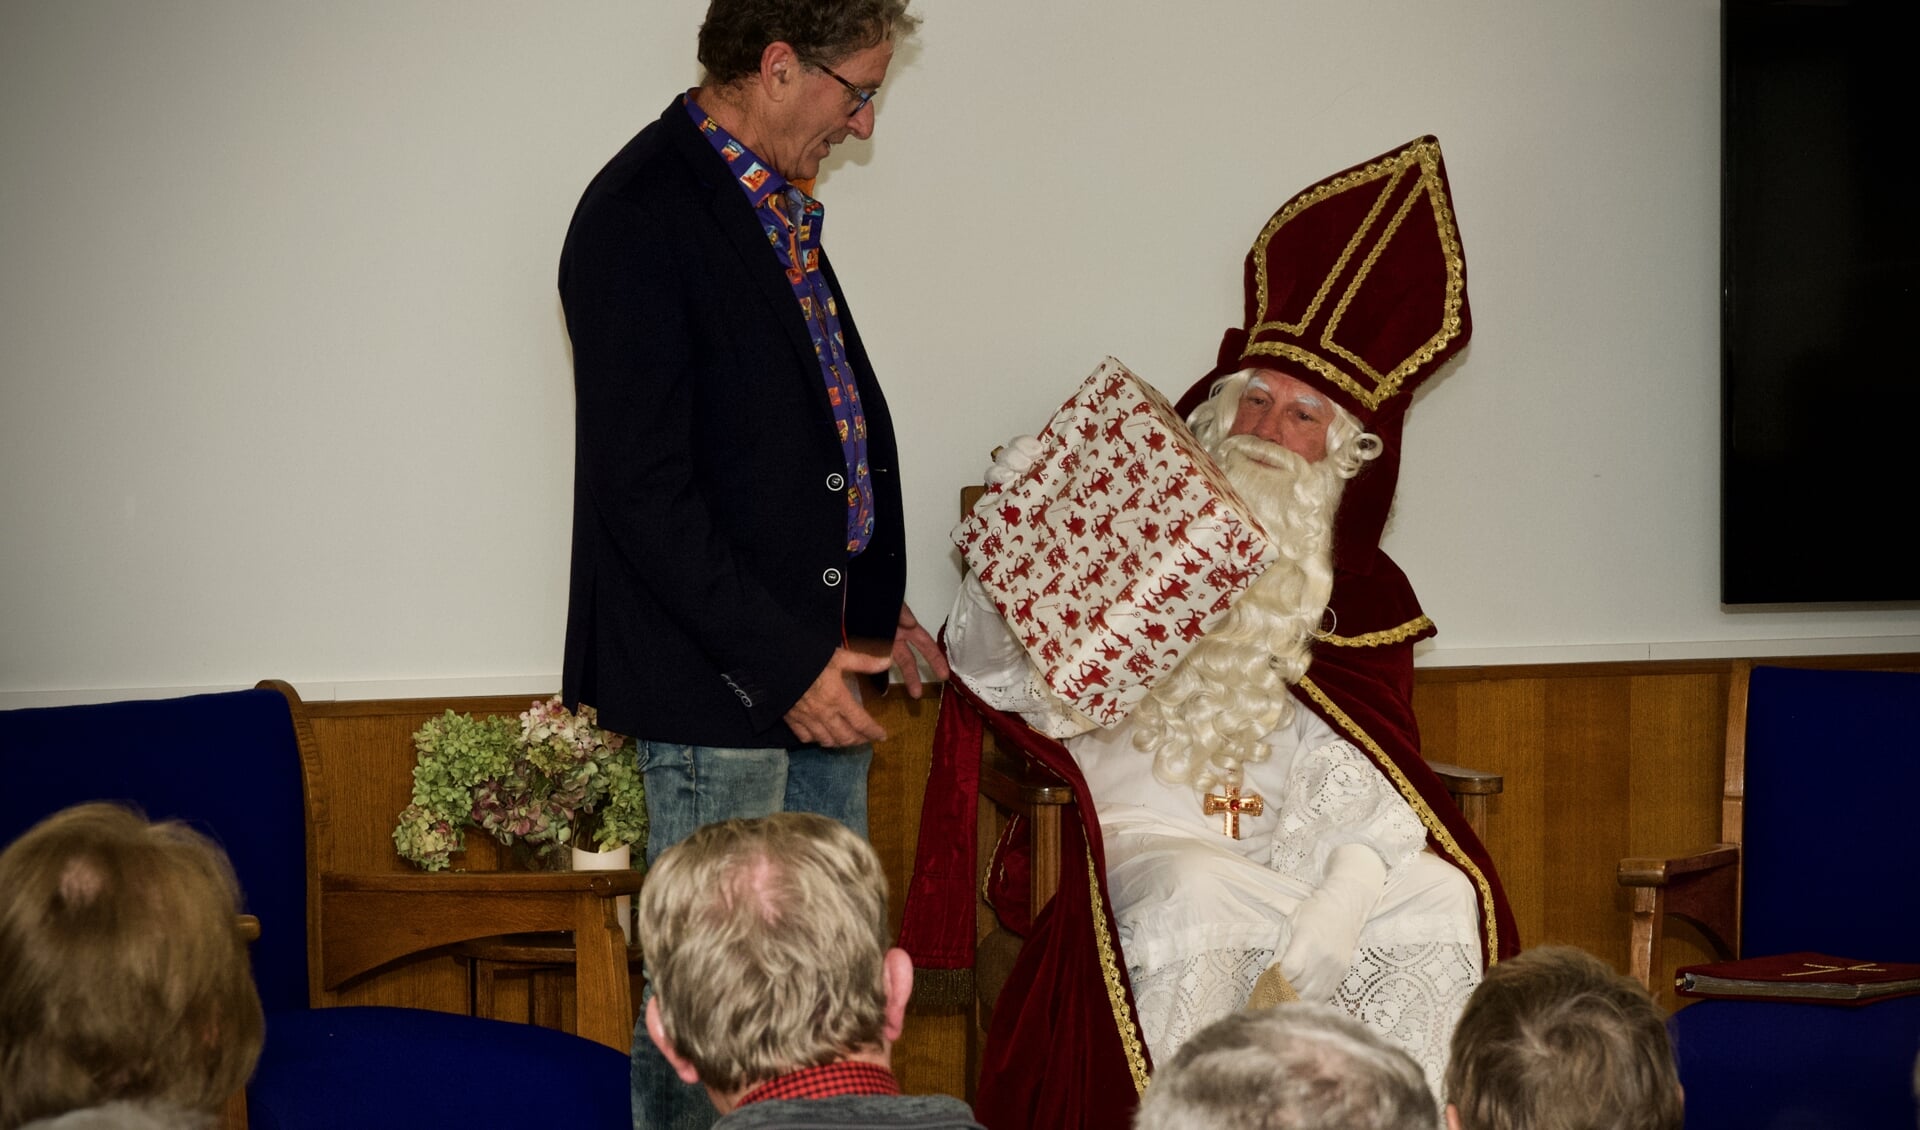 Samensteller van de tentoonstelling, Joop Tulp ontvangt van Sinterklaas een cadeautje.